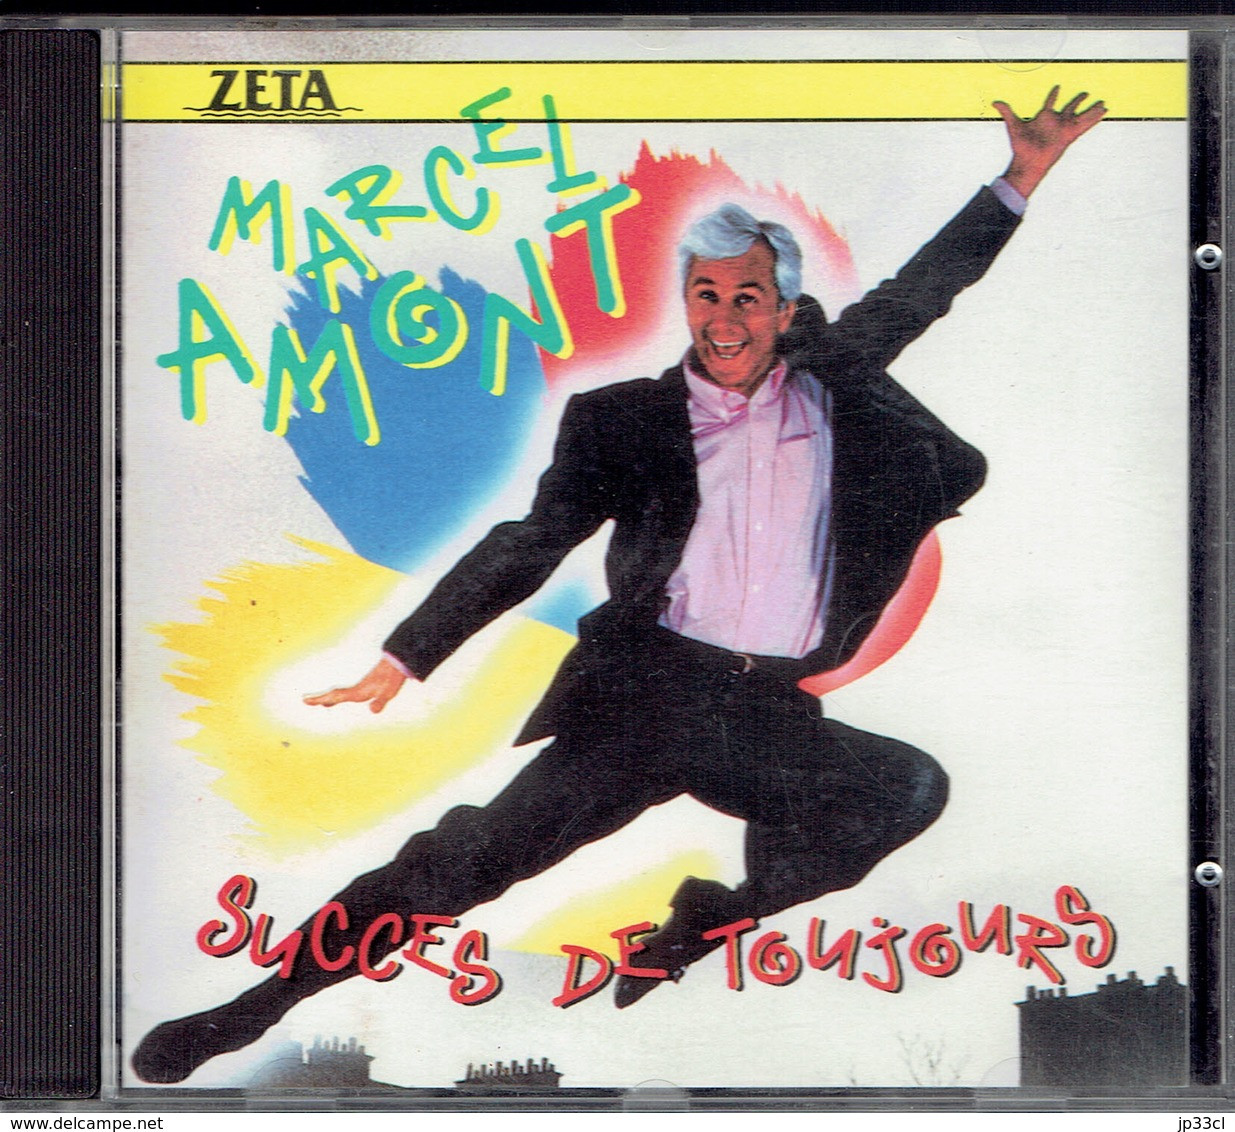 Succès De Toujours Par Marcel Amont (Zeta, 1989) - Compilaties